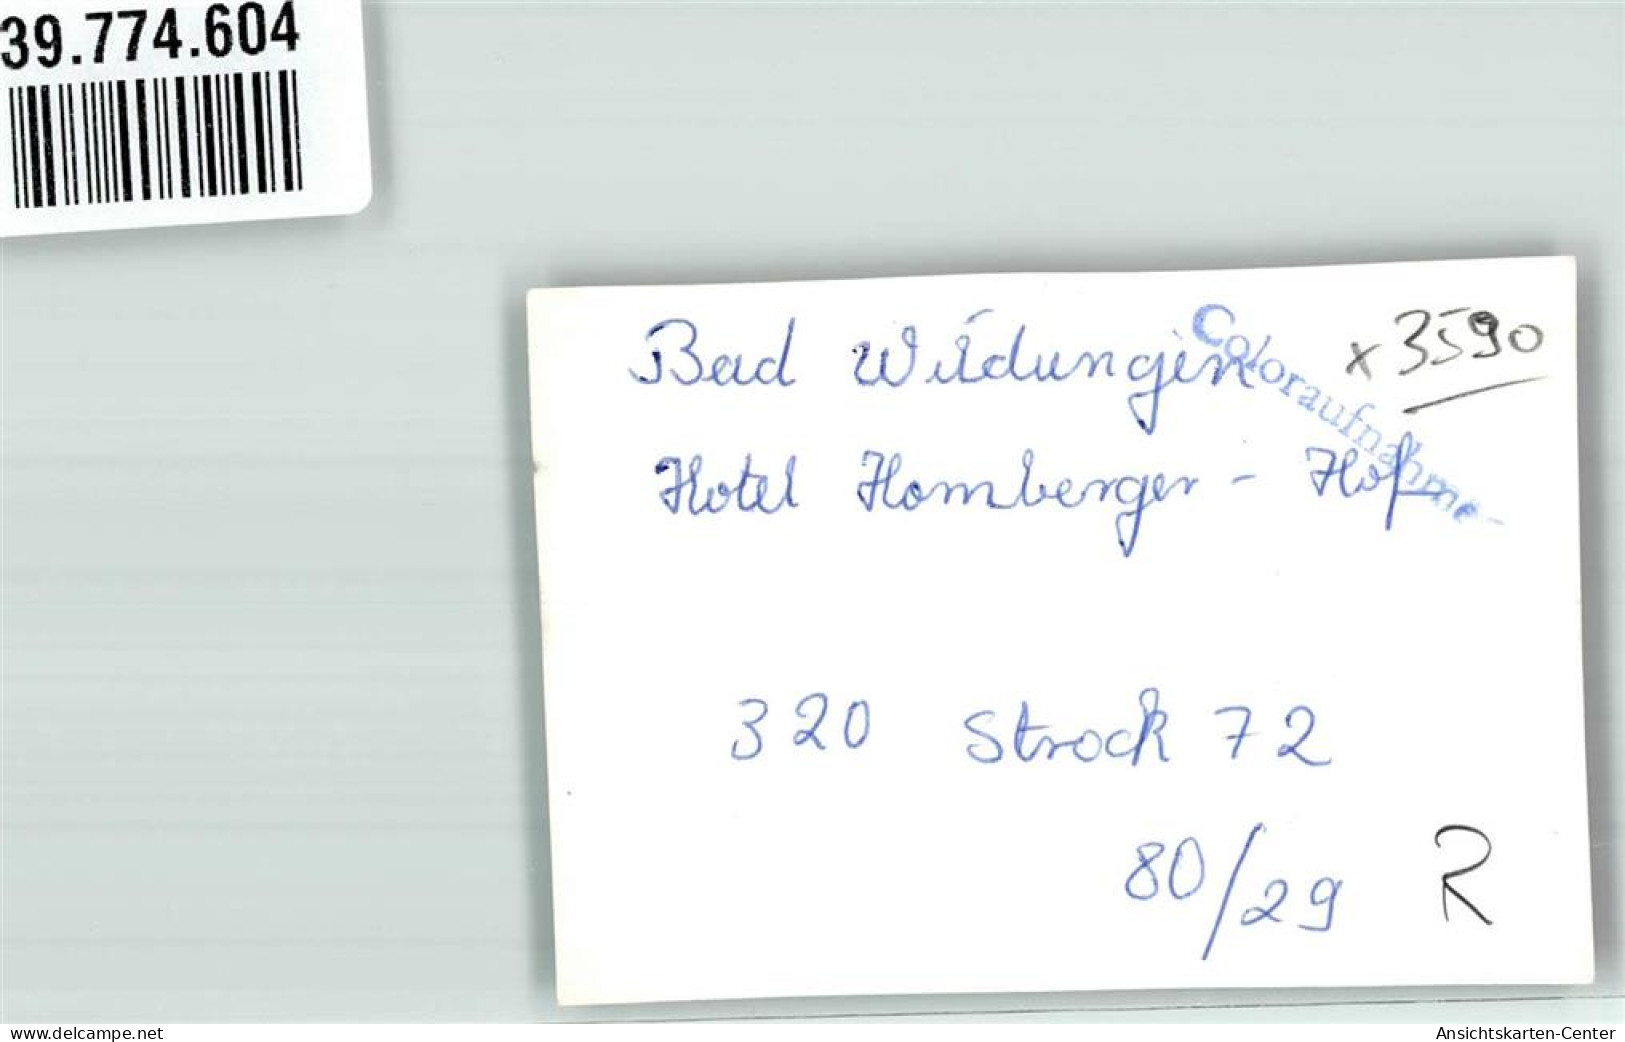 39774604 - Bad Wildungen - Bad Wildungen